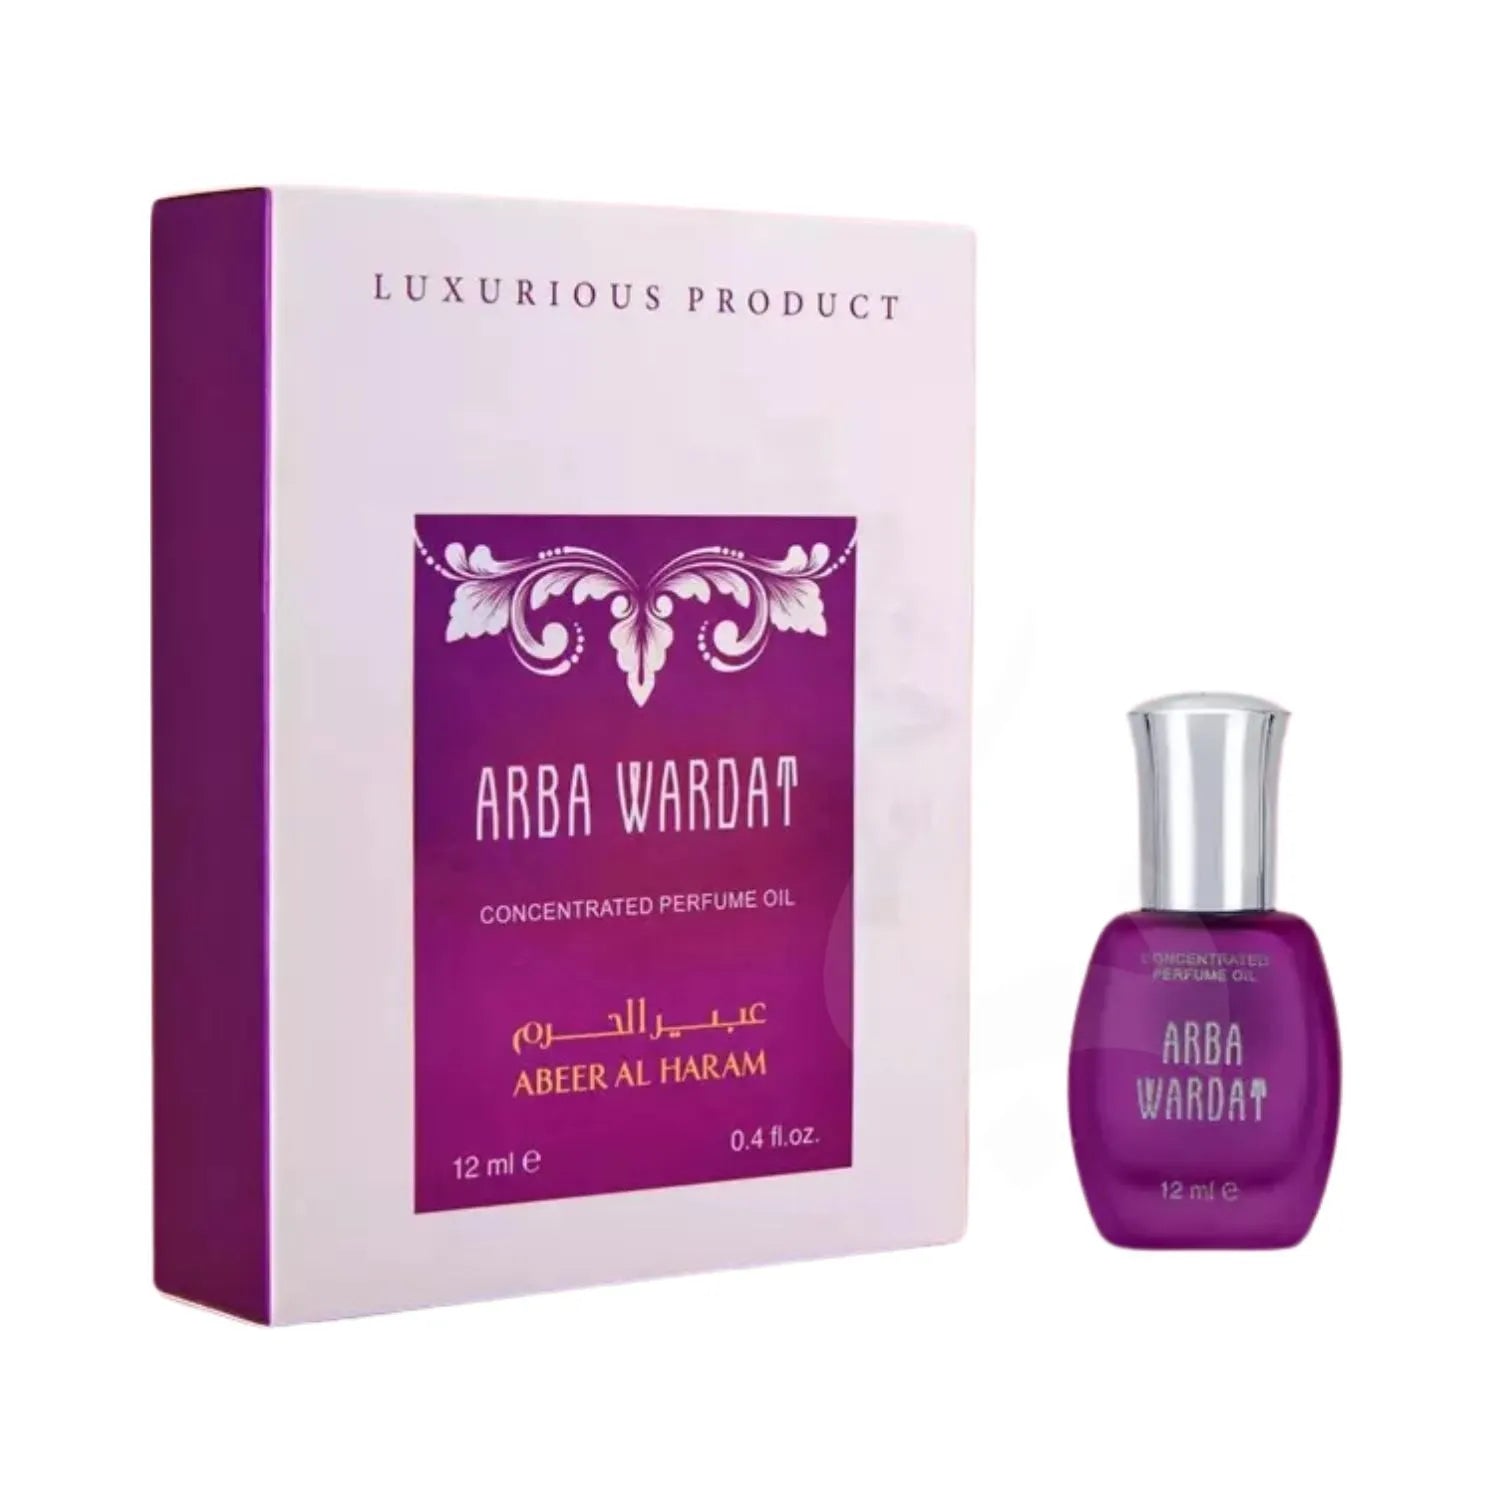 Arba Wardat Perfume Oil Package